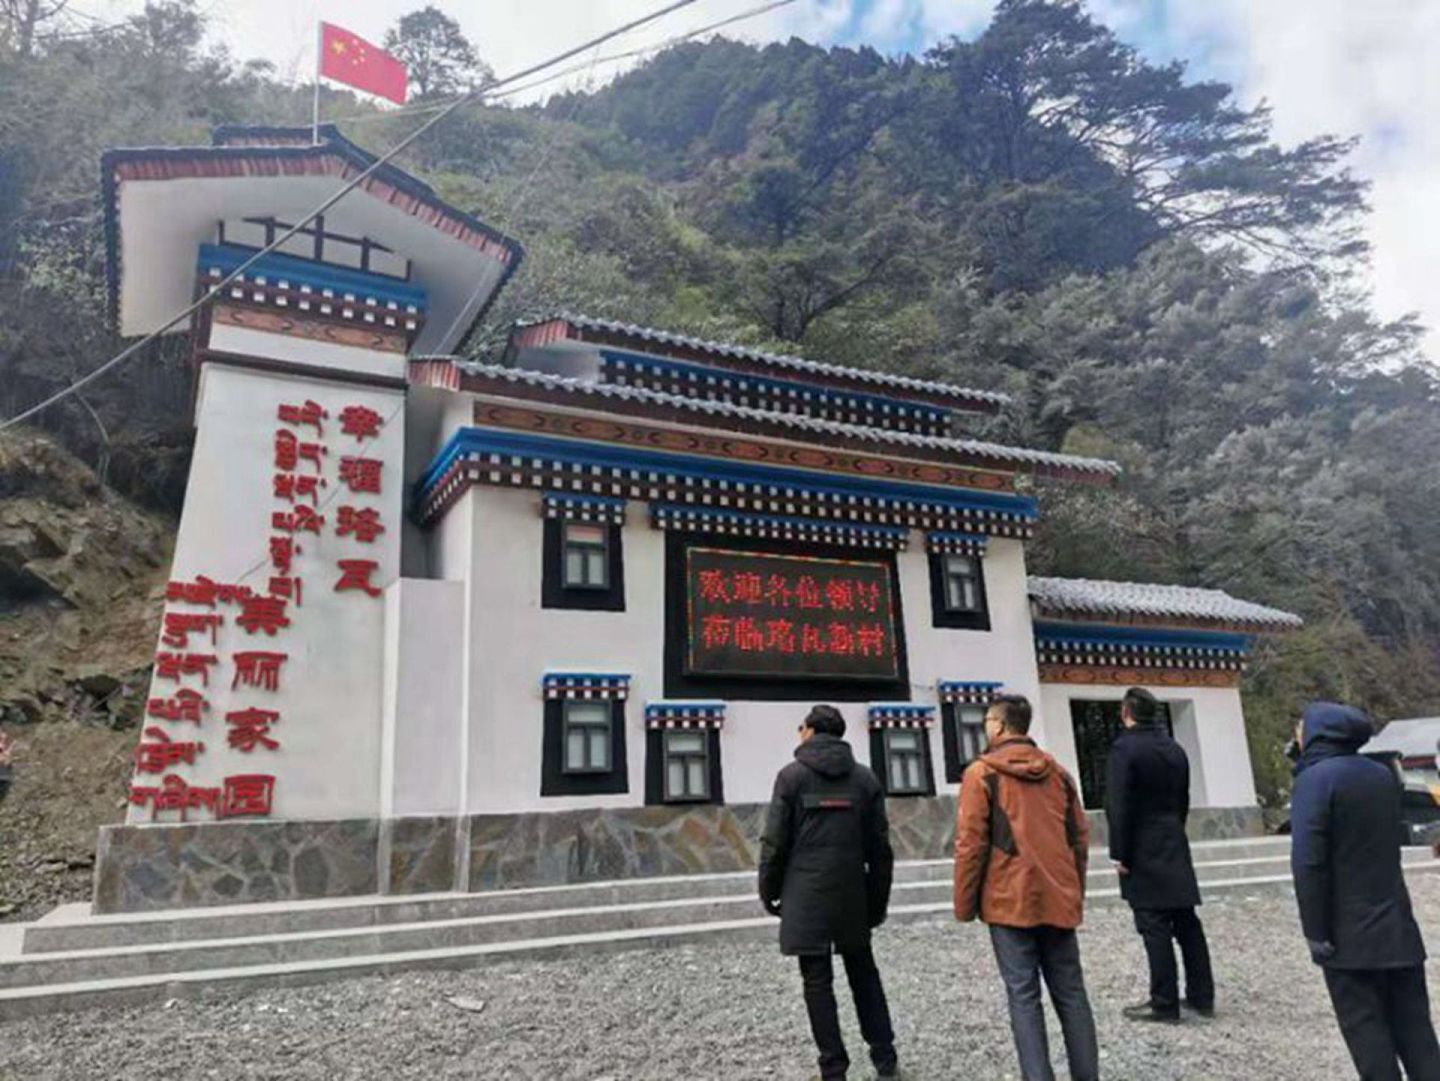 西藏易境旅游景观规划设计院承接的藏南朗久珞瓦新村项目2020年12月17日落成现场。（微博@LQ、柏）